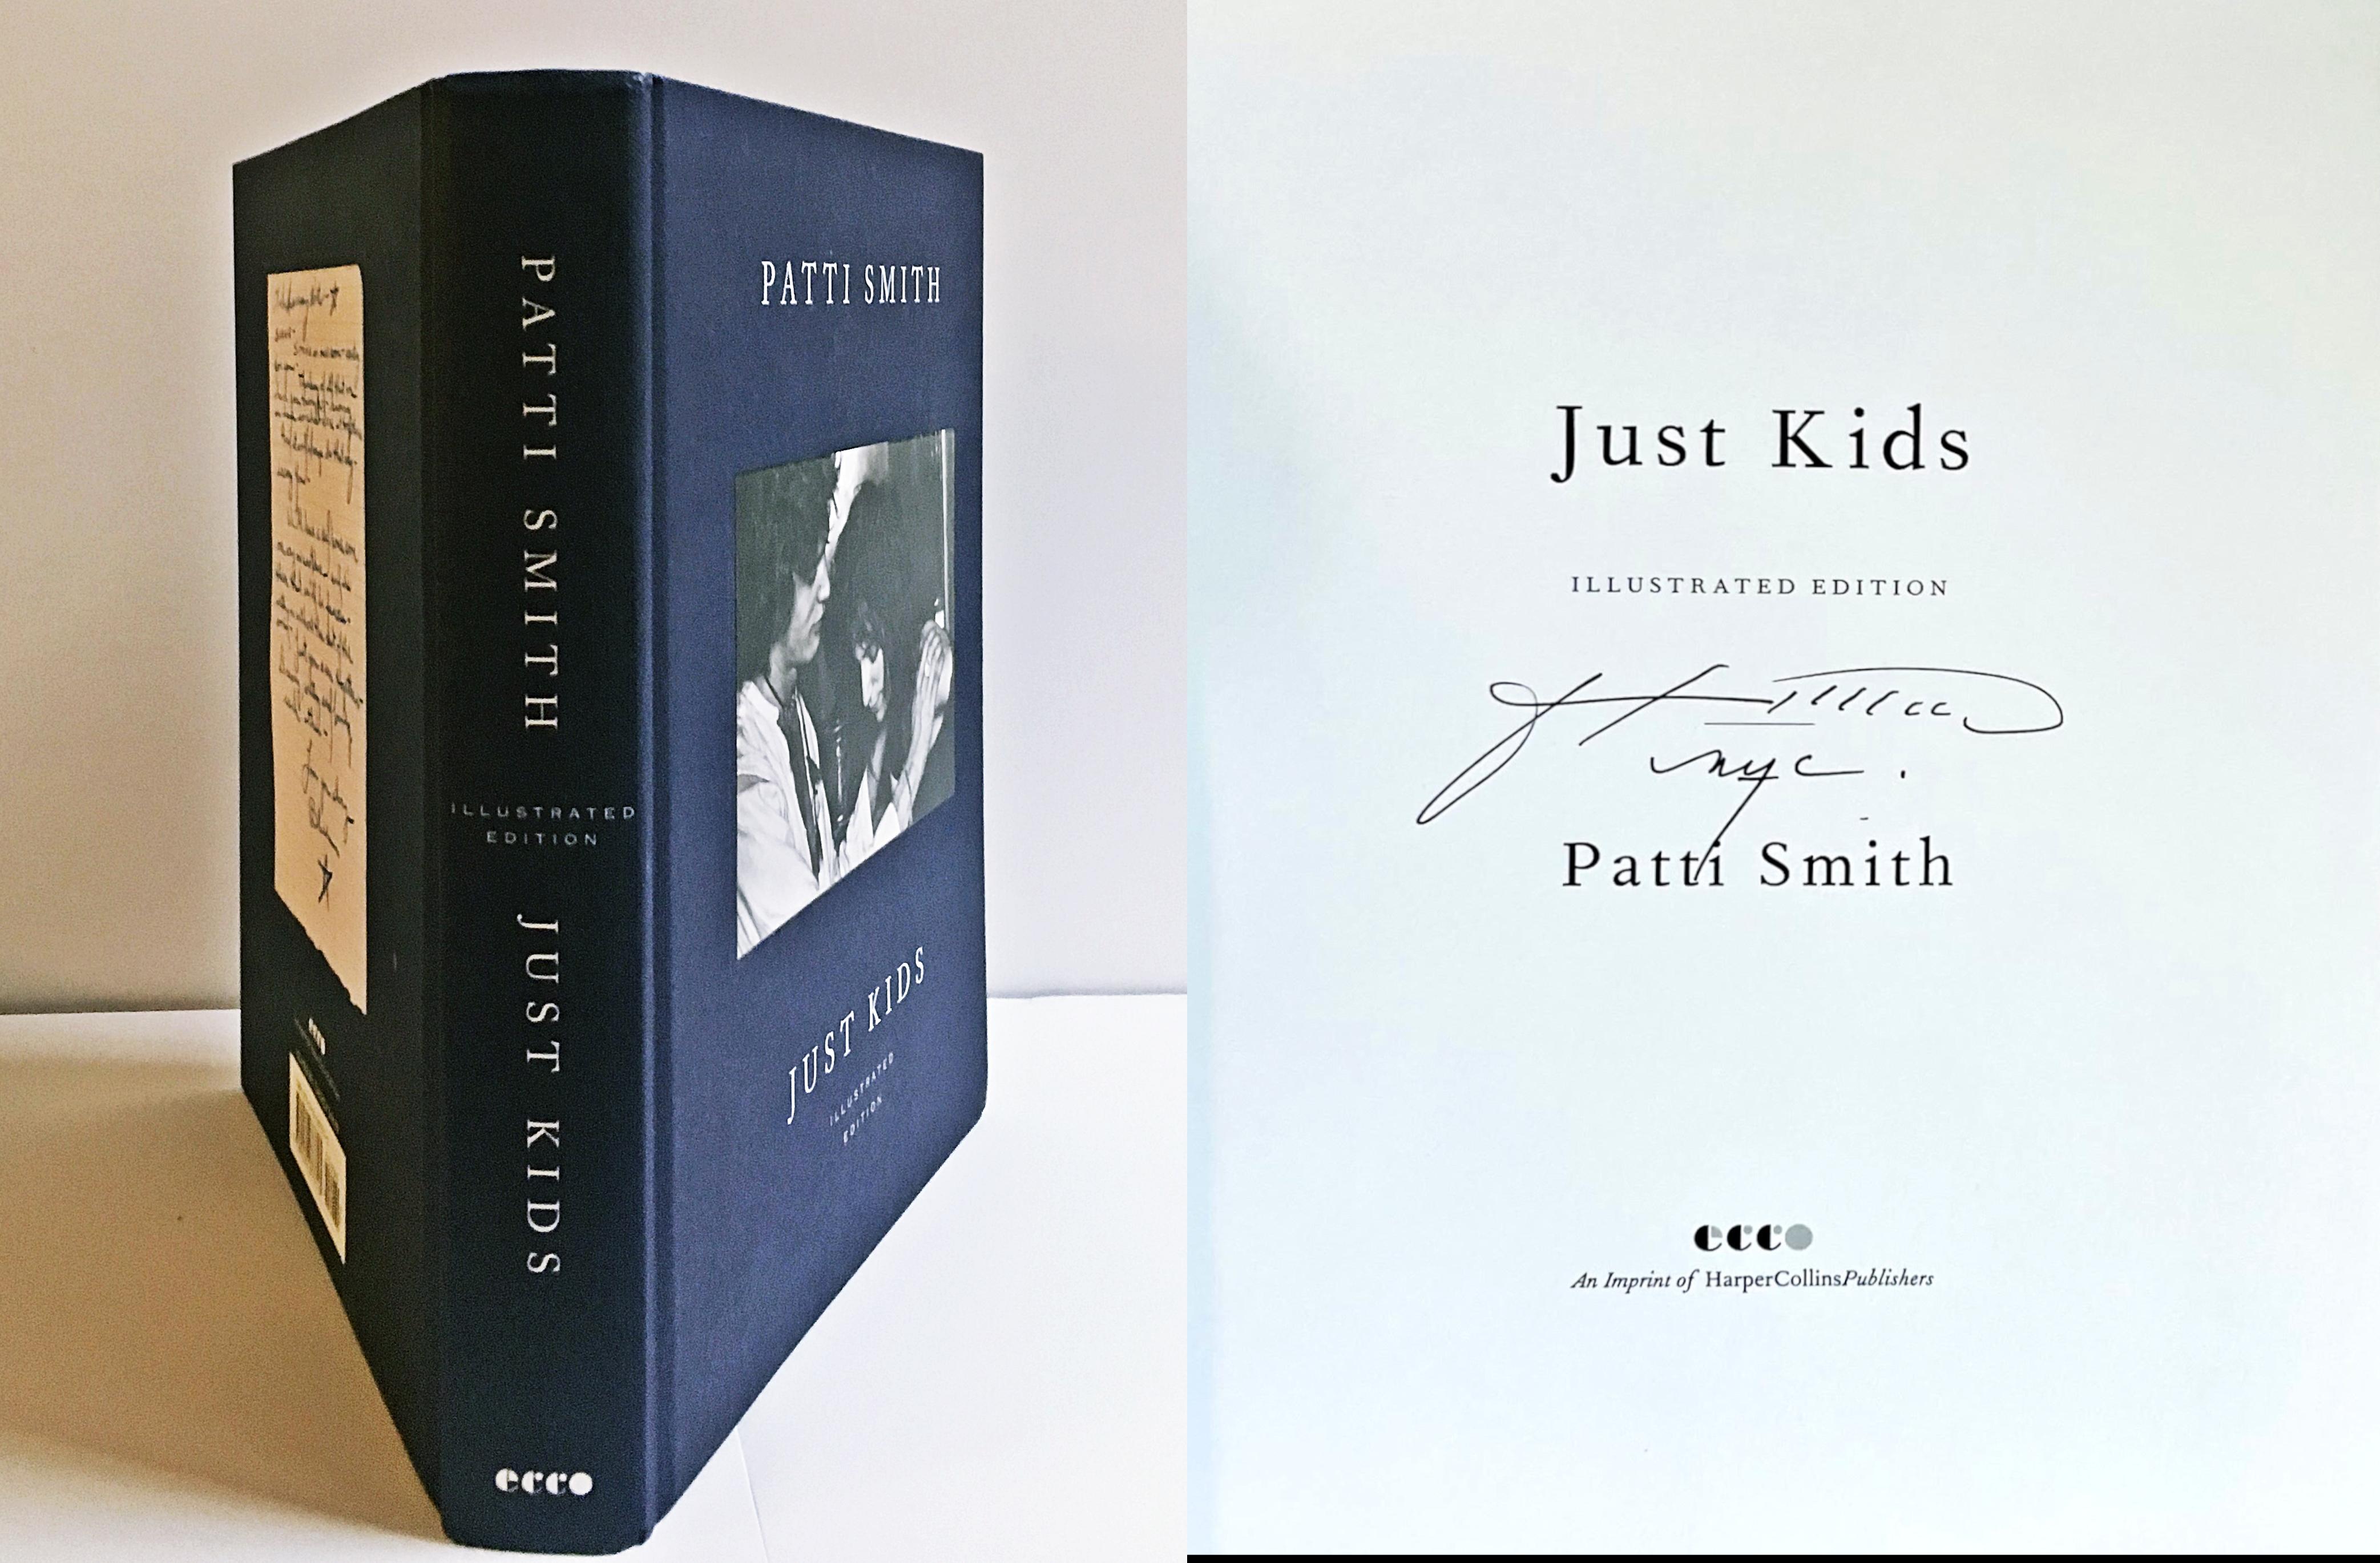 Patti Smith
Just Kids Illustrated Edition (handsigniert und datiert von Patti Smith), 2018
Gebundene Monografie (handsigniert und mit Widmung von Patti Smith)
Handsigniert und datiert von Patti Smith
9 4/5 × 7 1/10 × 1 1/4